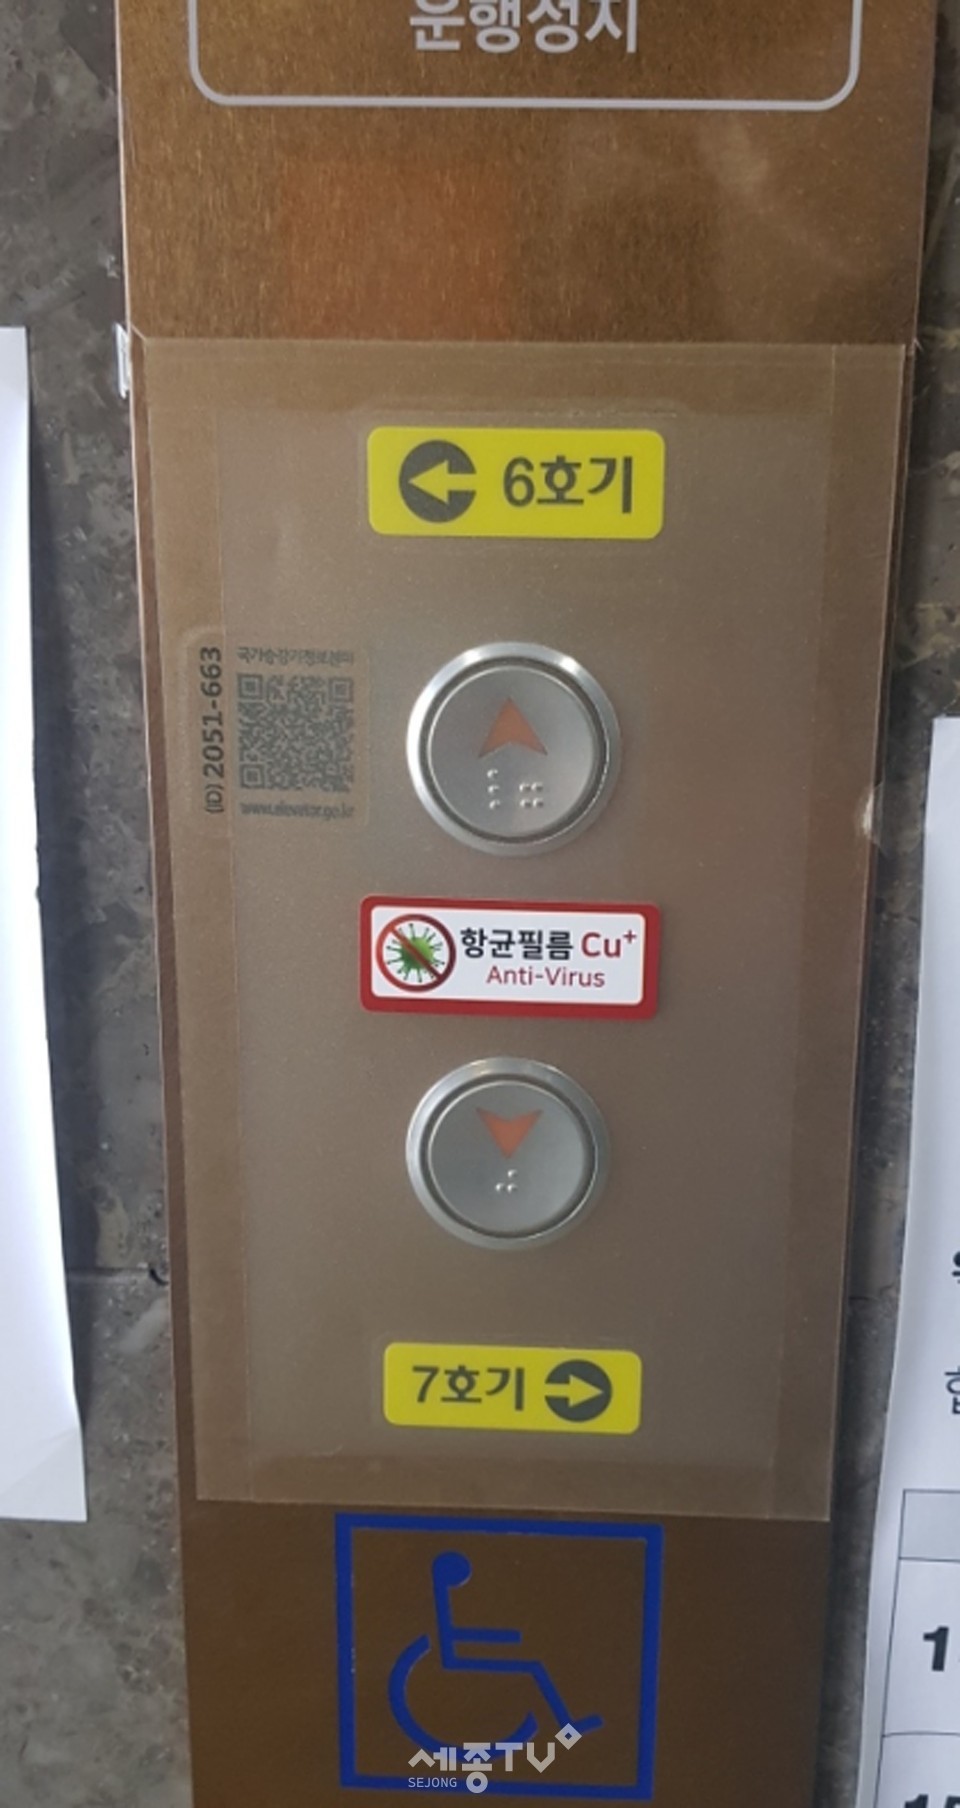 성남시청 엘리베이터 버튼에 부착한 항균 필름. (사진제공=성남시청)